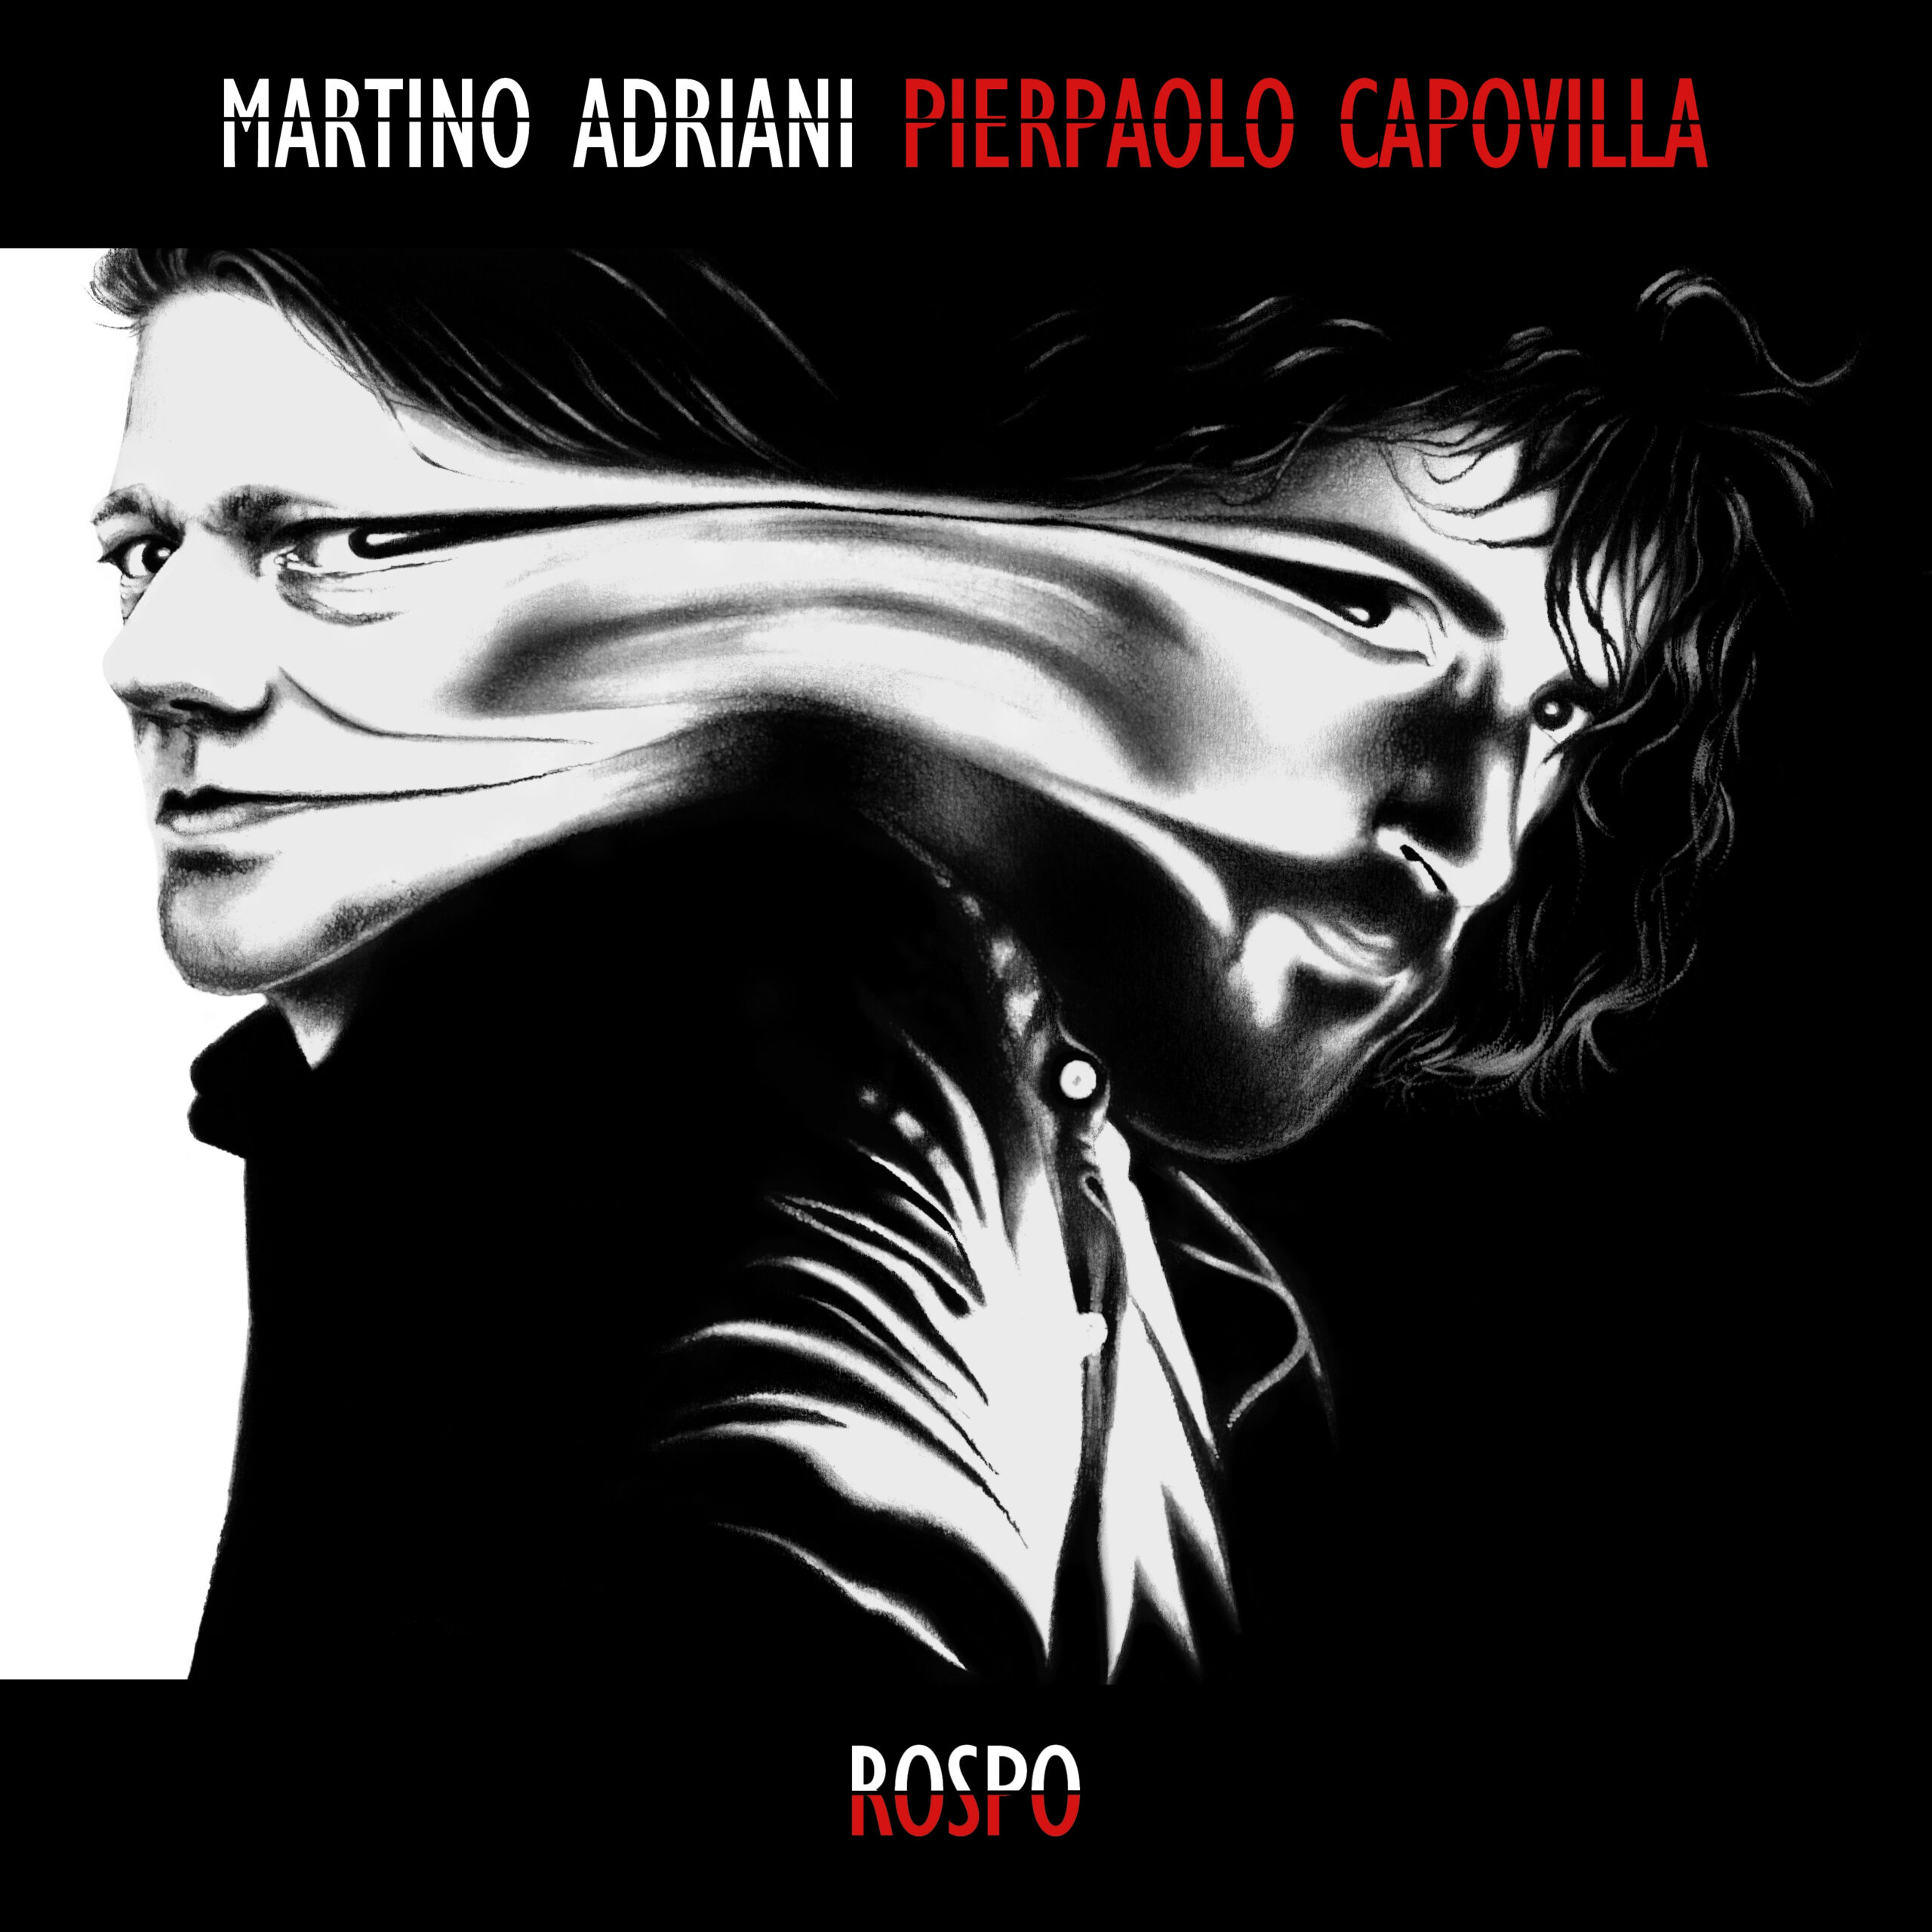 Pierpaolo Capovilla ospite nel nuovo brano di Martino Adriani, rifacimento a 4 mani del suo brano “Rospo”